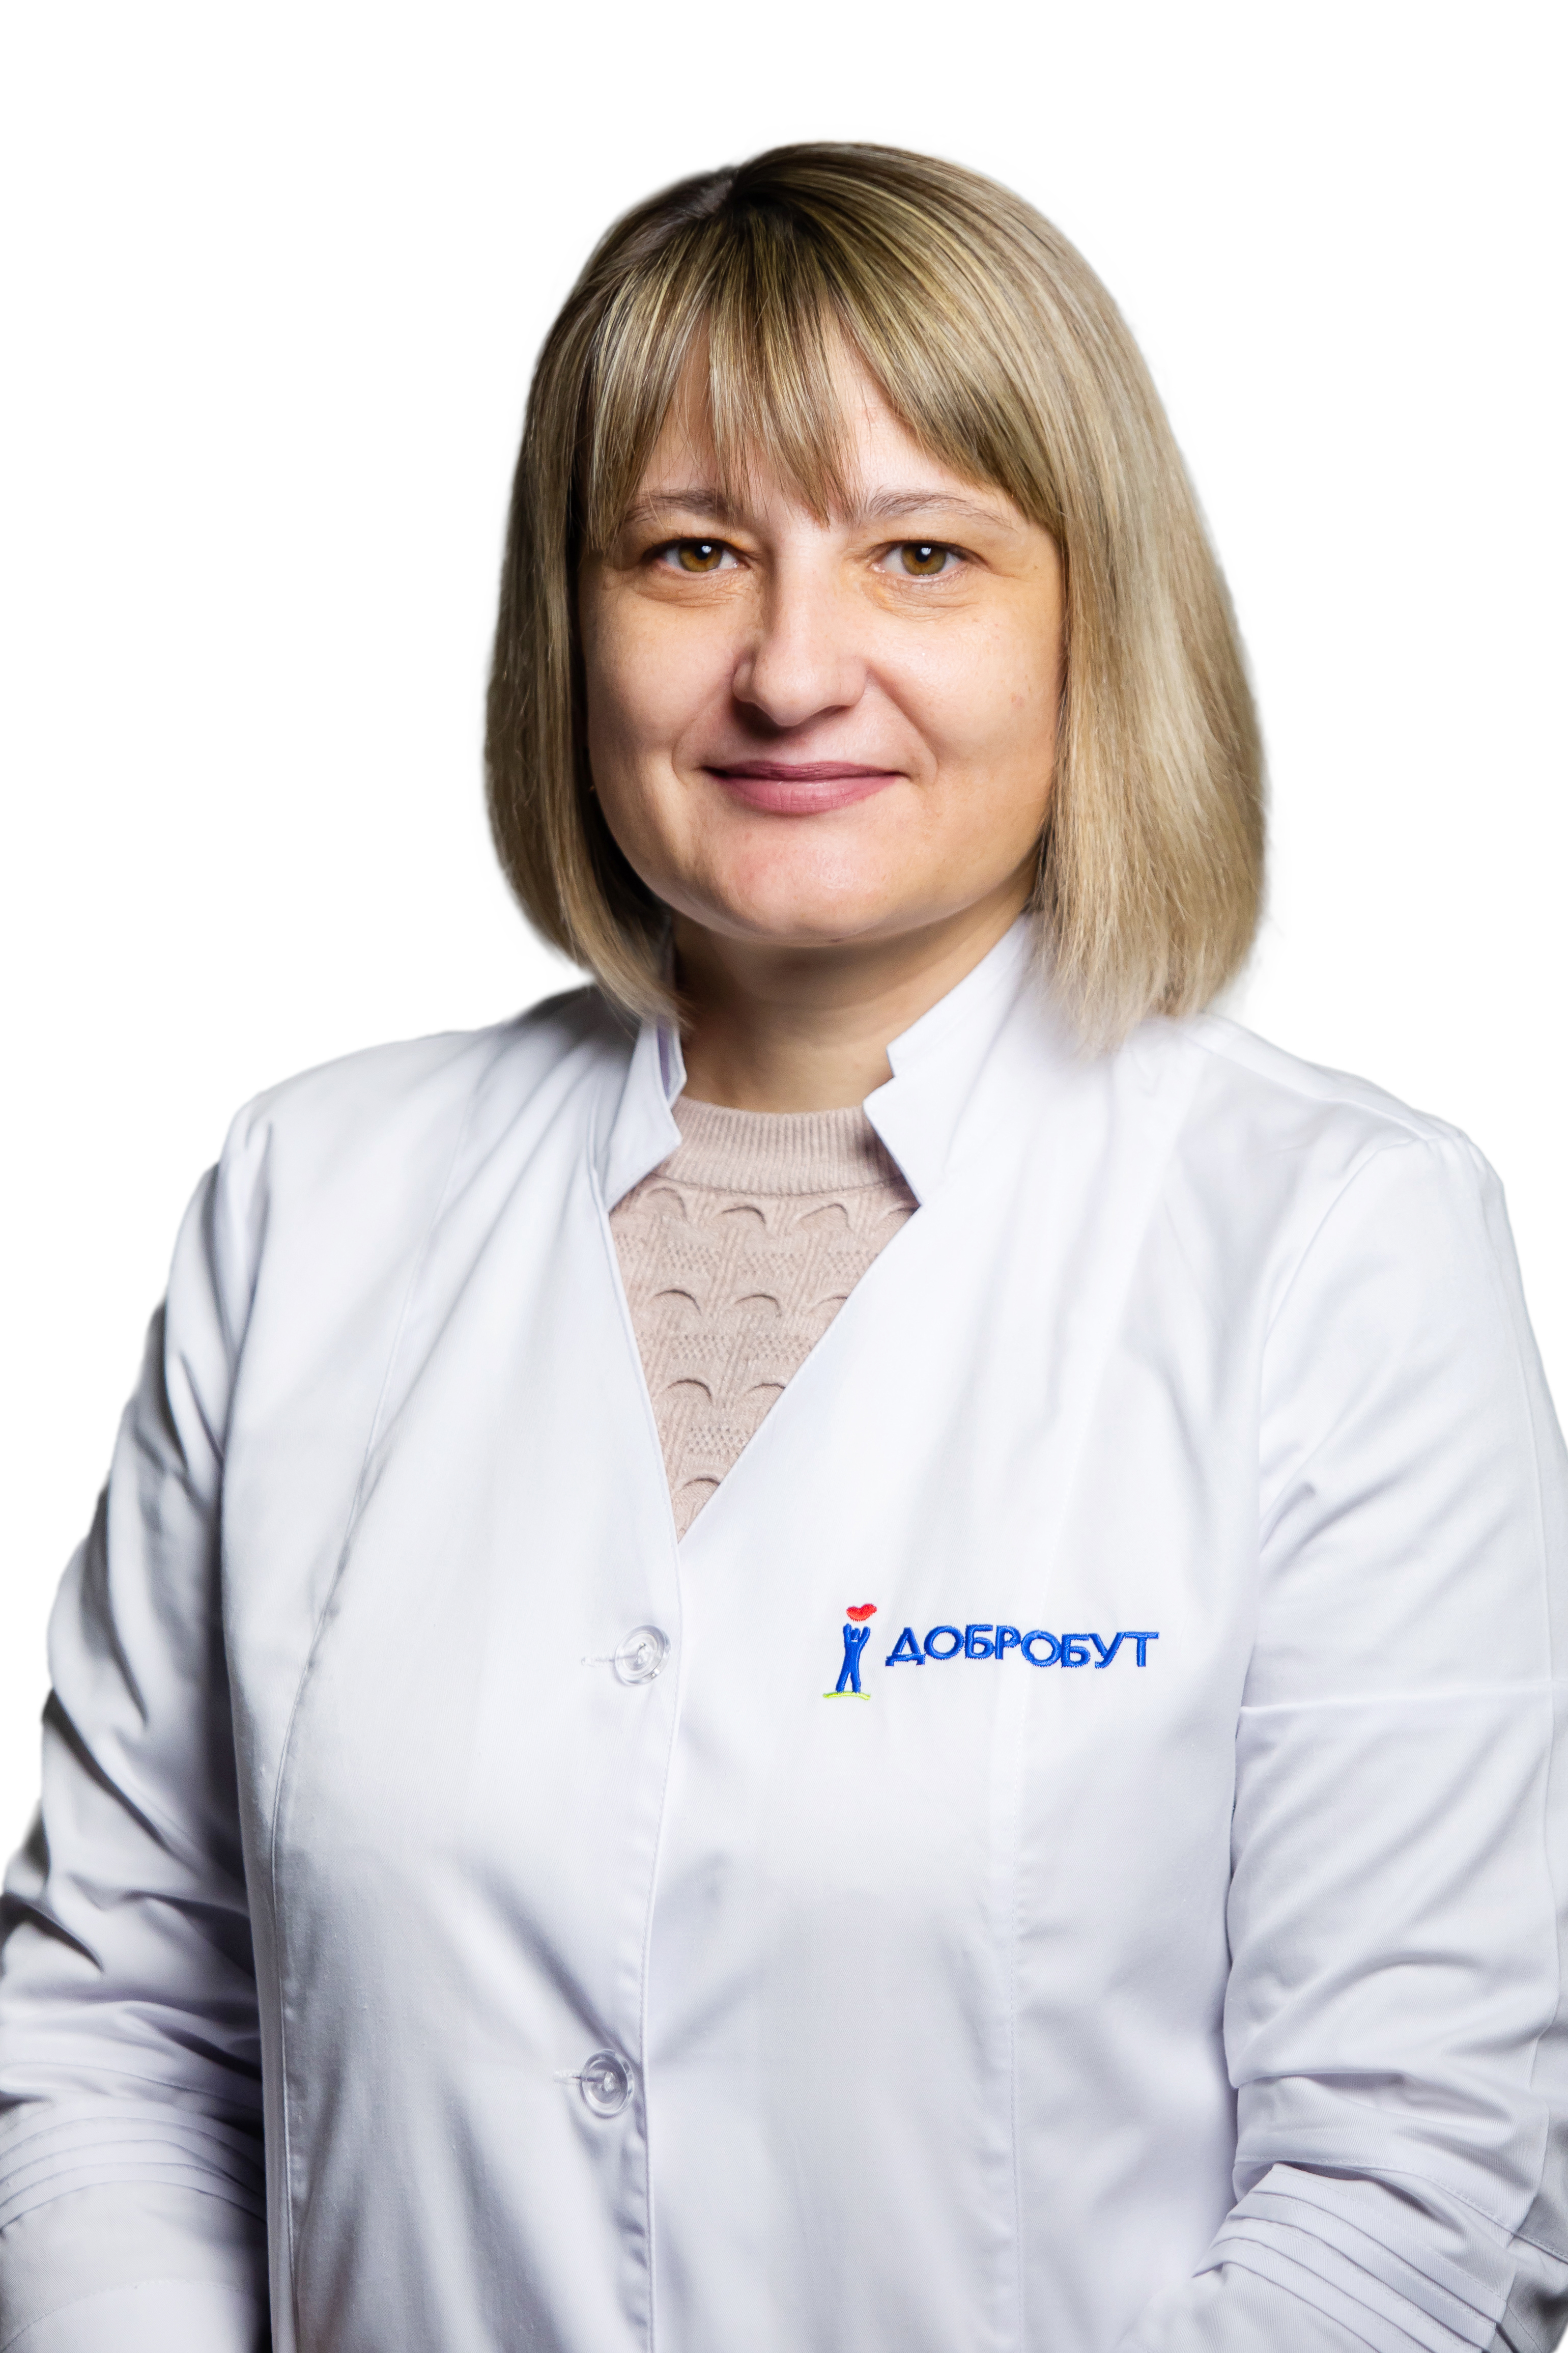 Siechkarova Iryna Volodymyrivna